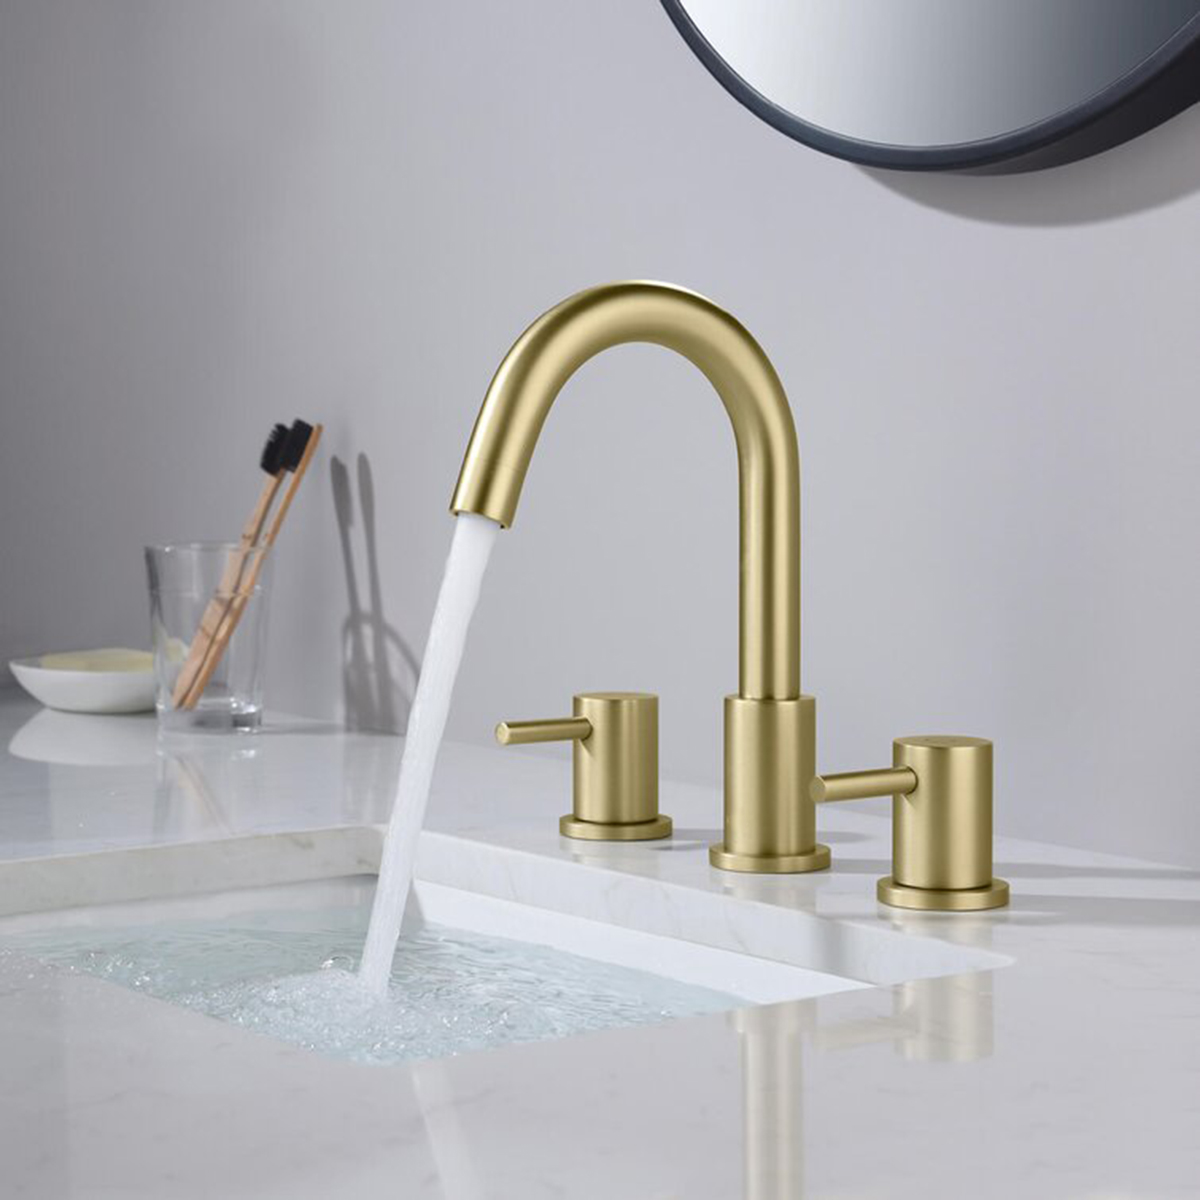 Aquacubic 8-дюймовый золотой смеситель для раковины в ванной комнате с 3 отверстиями, широко распространенный с клапаном и шлангами подачи воды cUPC